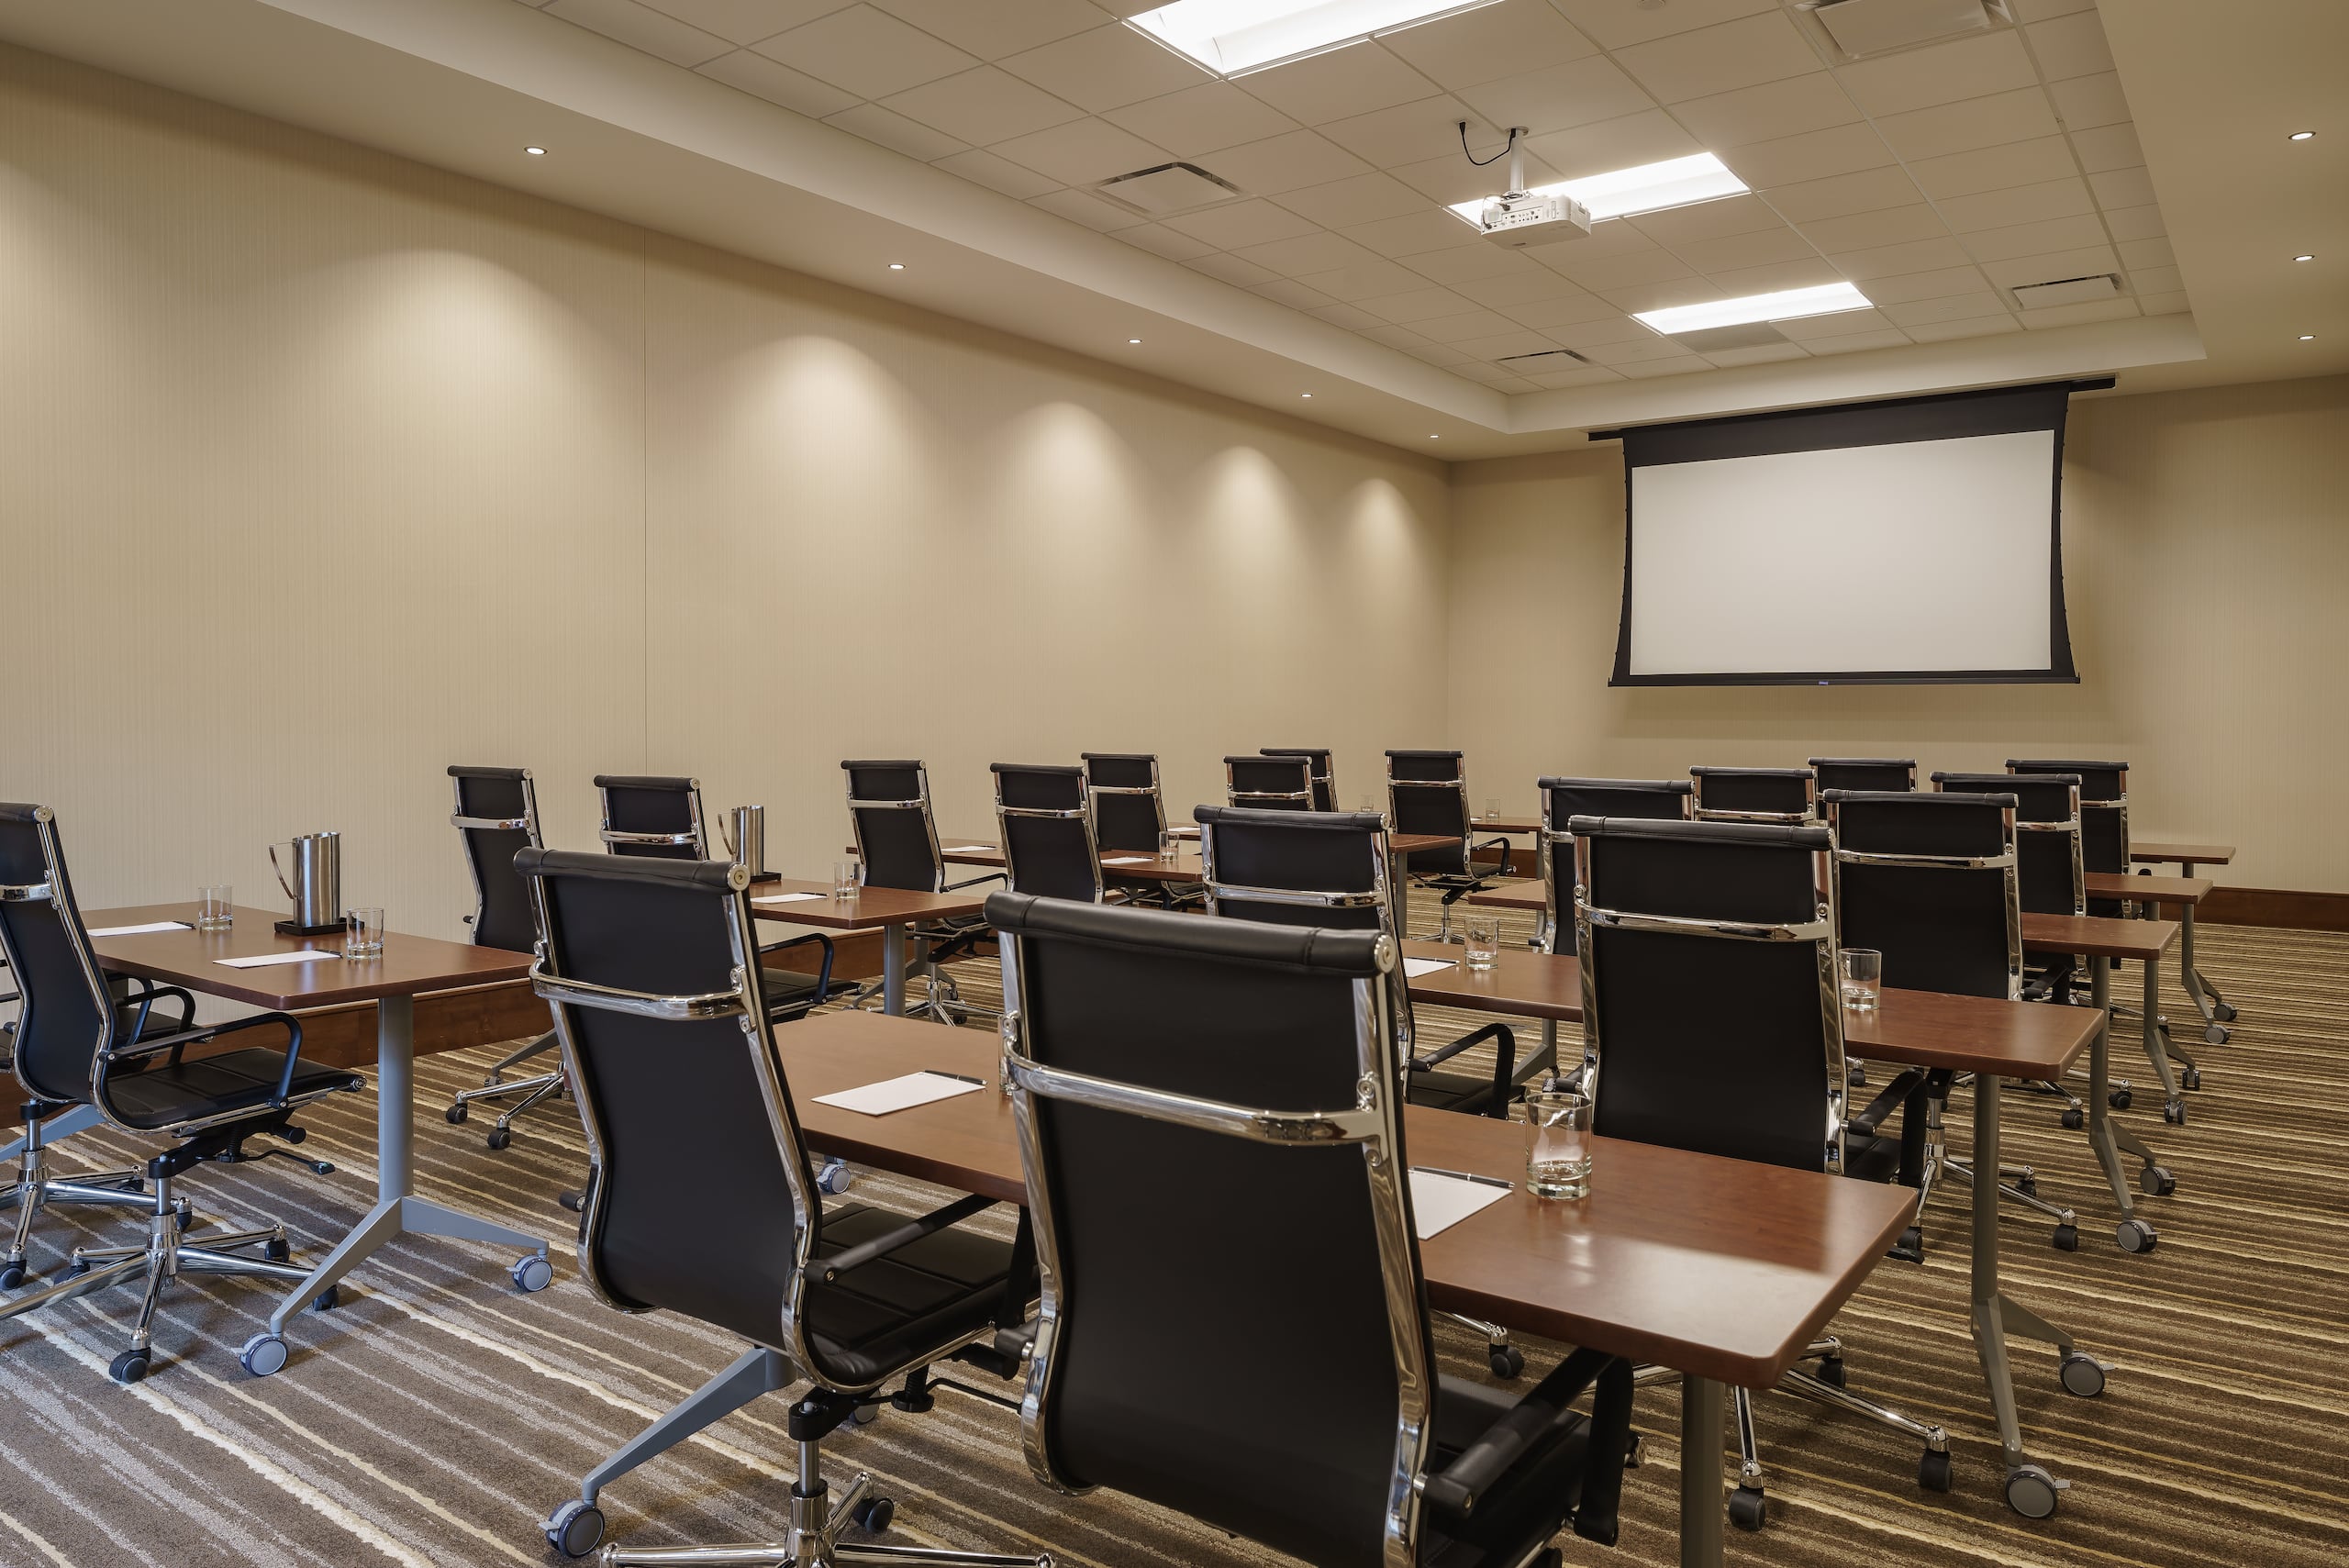 Hyatt Regency Aurora-Denver Conference Center Conference Room VII Classroom